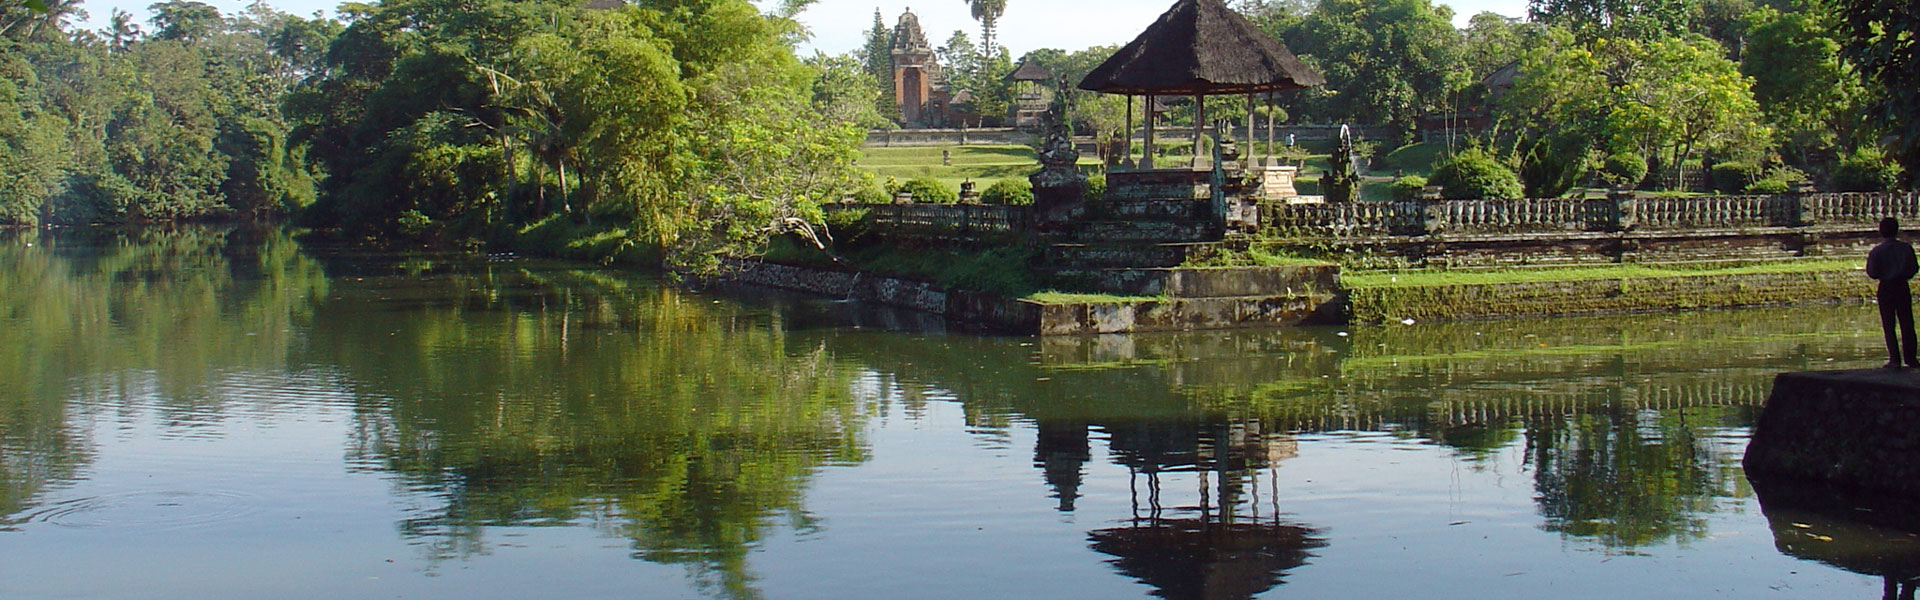 Taman Ayun Temple Royal with pond